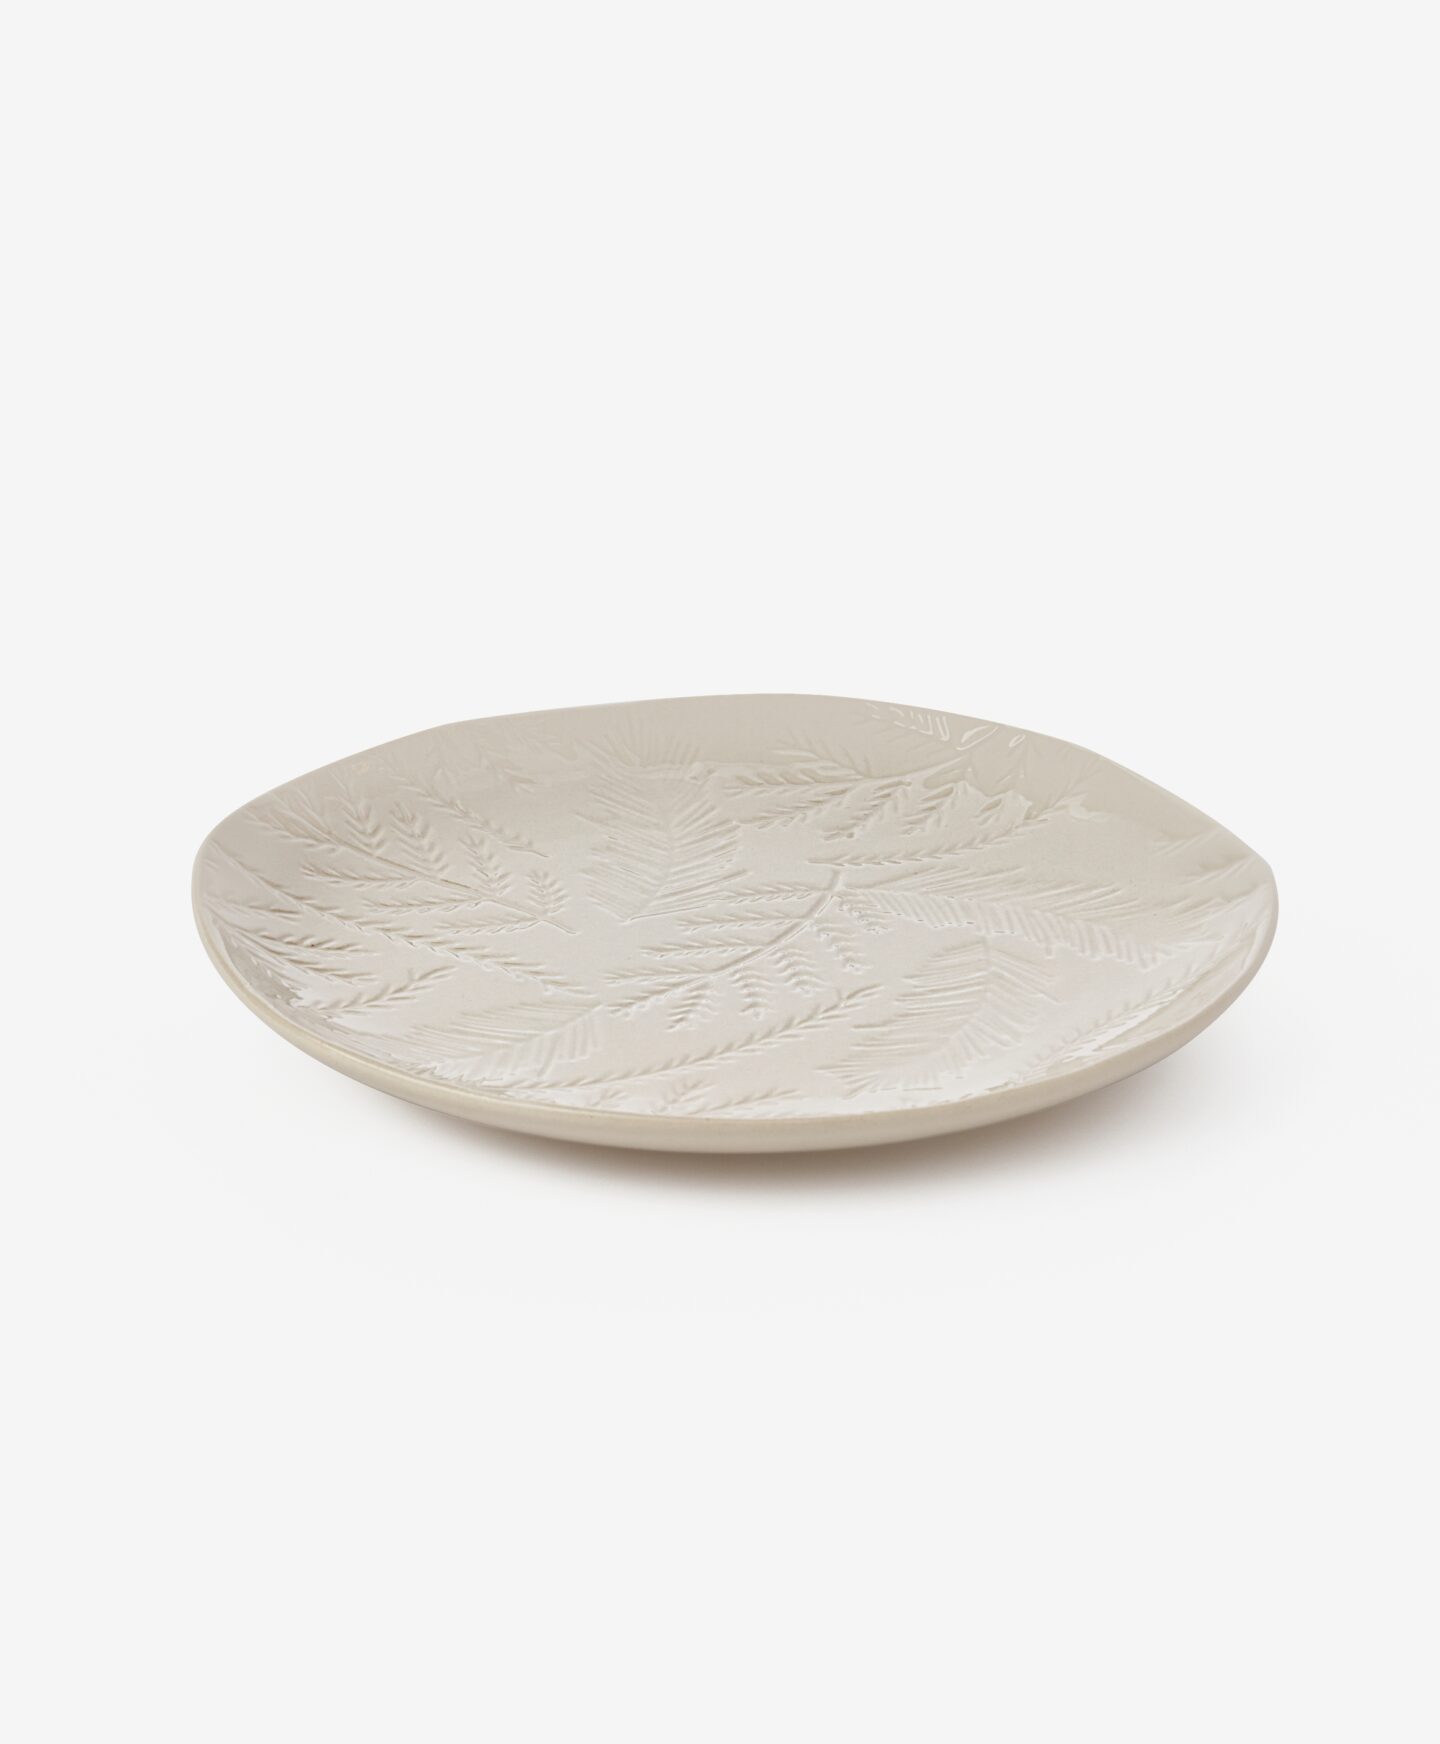 Κεραμικό πιάτο για επιδόρπιο με αποτυπωμένα κλαδιά, χρώμα λευκό, 20,5 cm x 20 cm x 2,3 cm